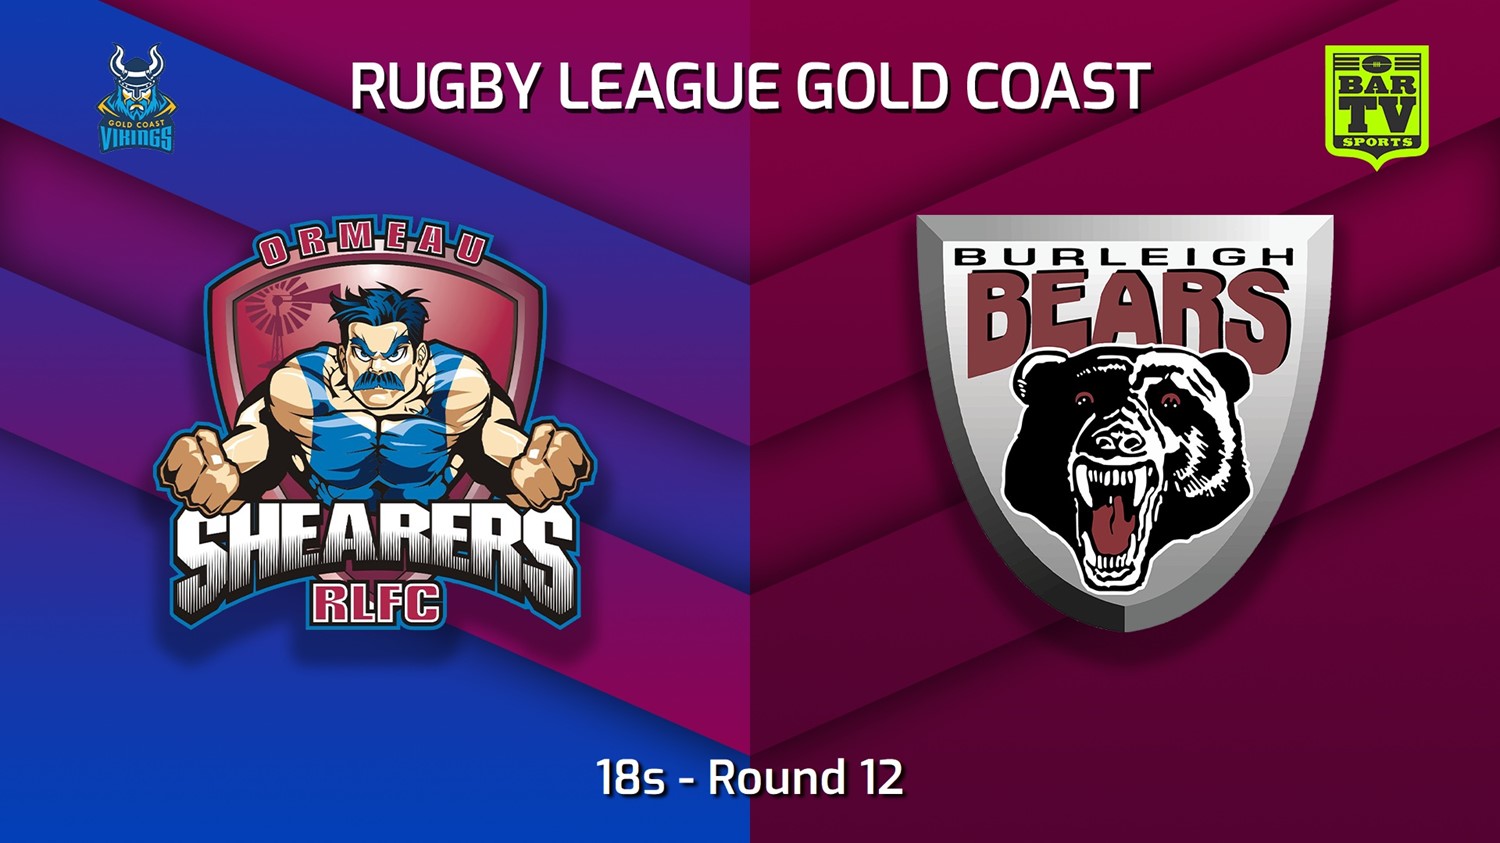 220702-Gold Coast Round 12 - 18s - Ormeau Shearers v Burleigh Bears Slate Image